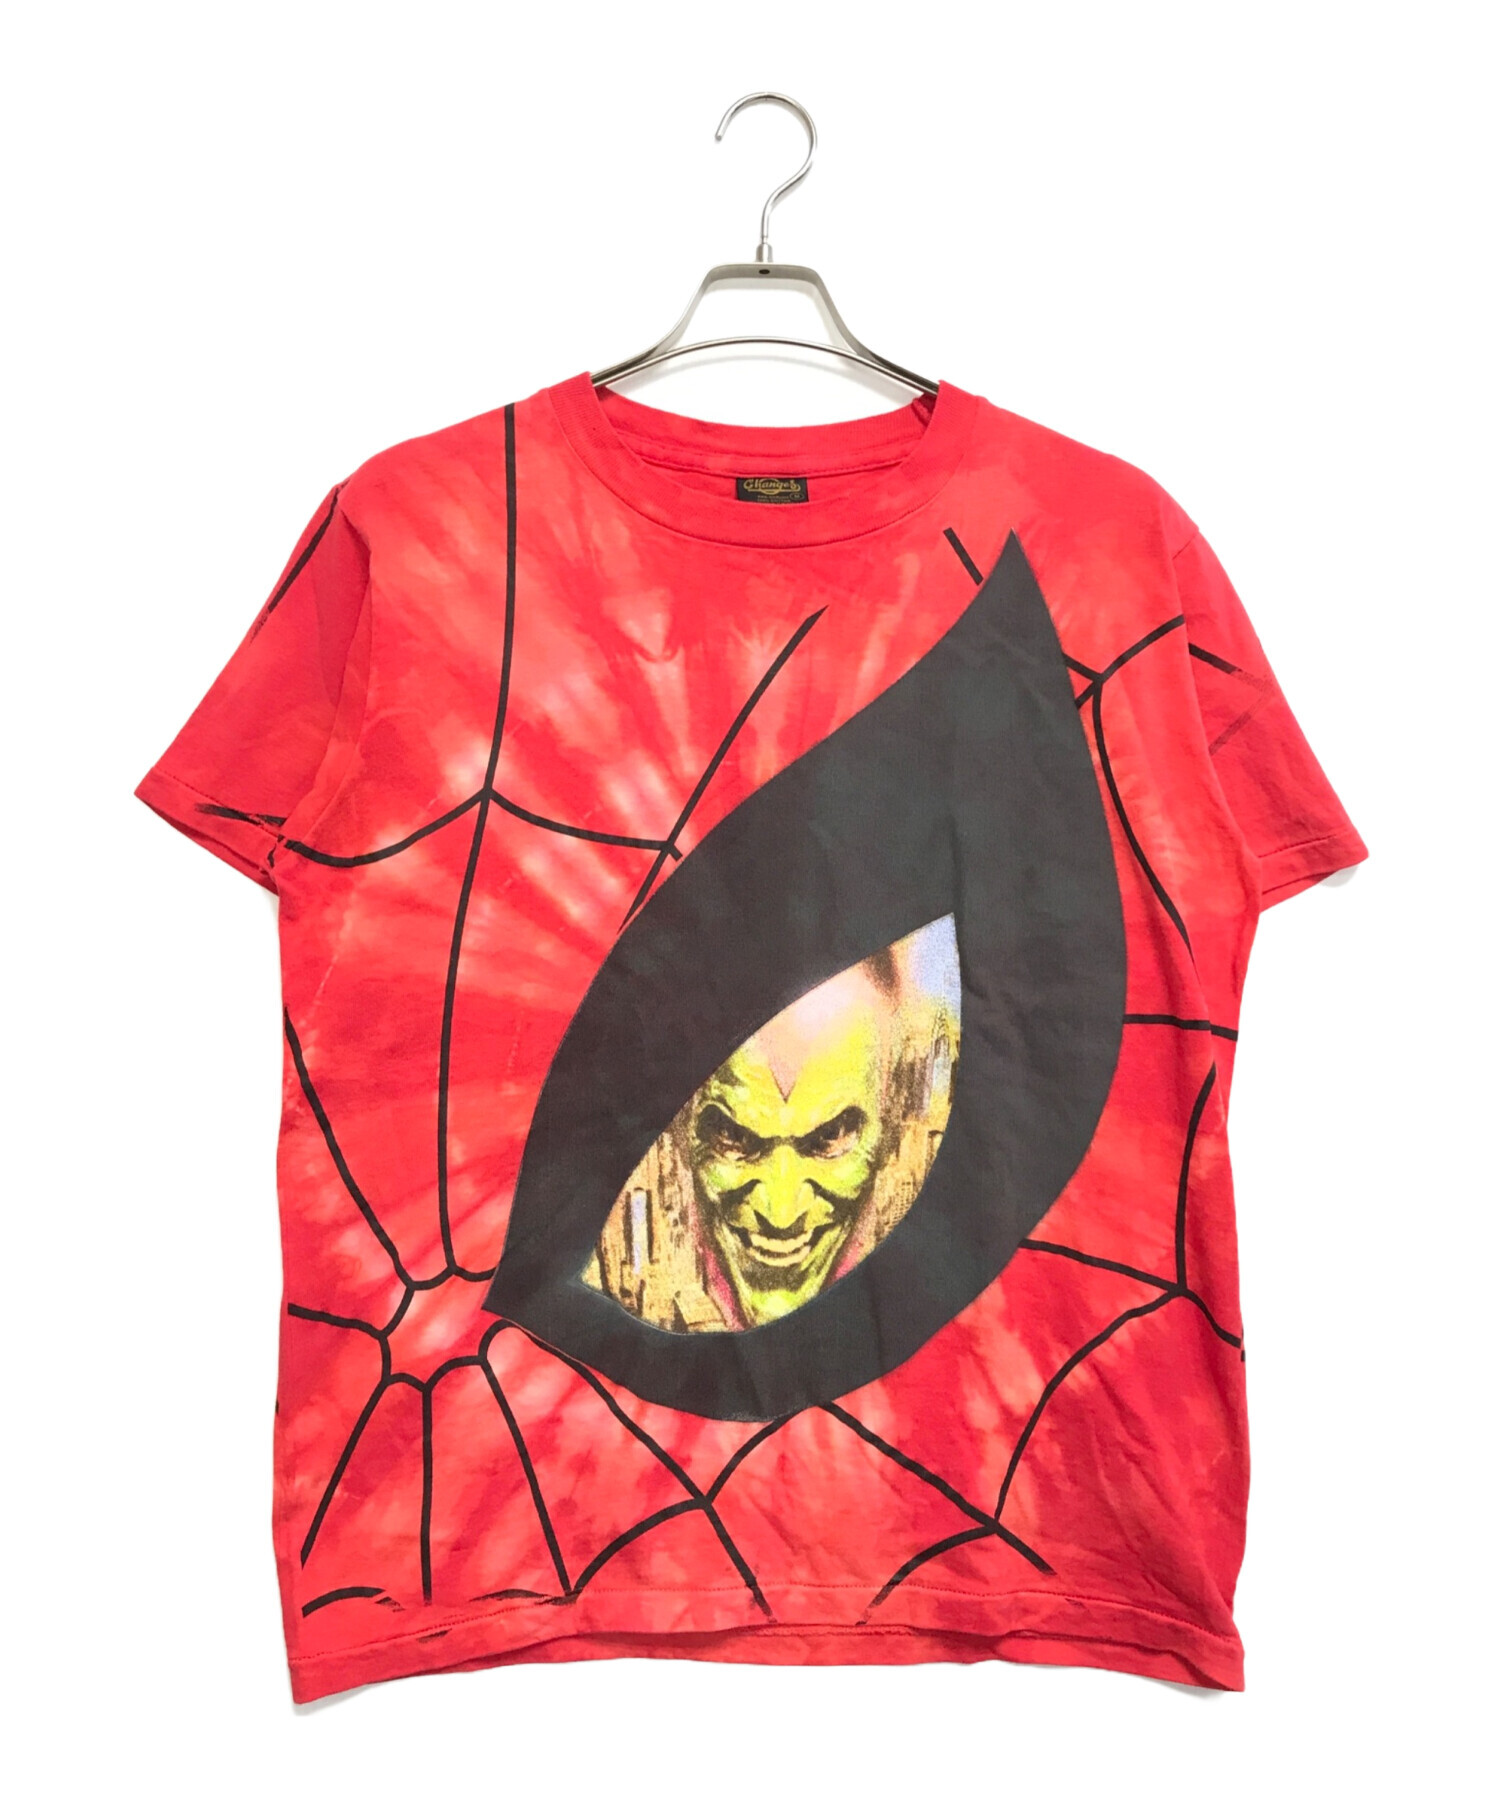 ムービーTシャツ (ムービーTシャツ) 90s SPIDERMAN(スパイダーマン) ムービーtシャツ レッド サイズ:M